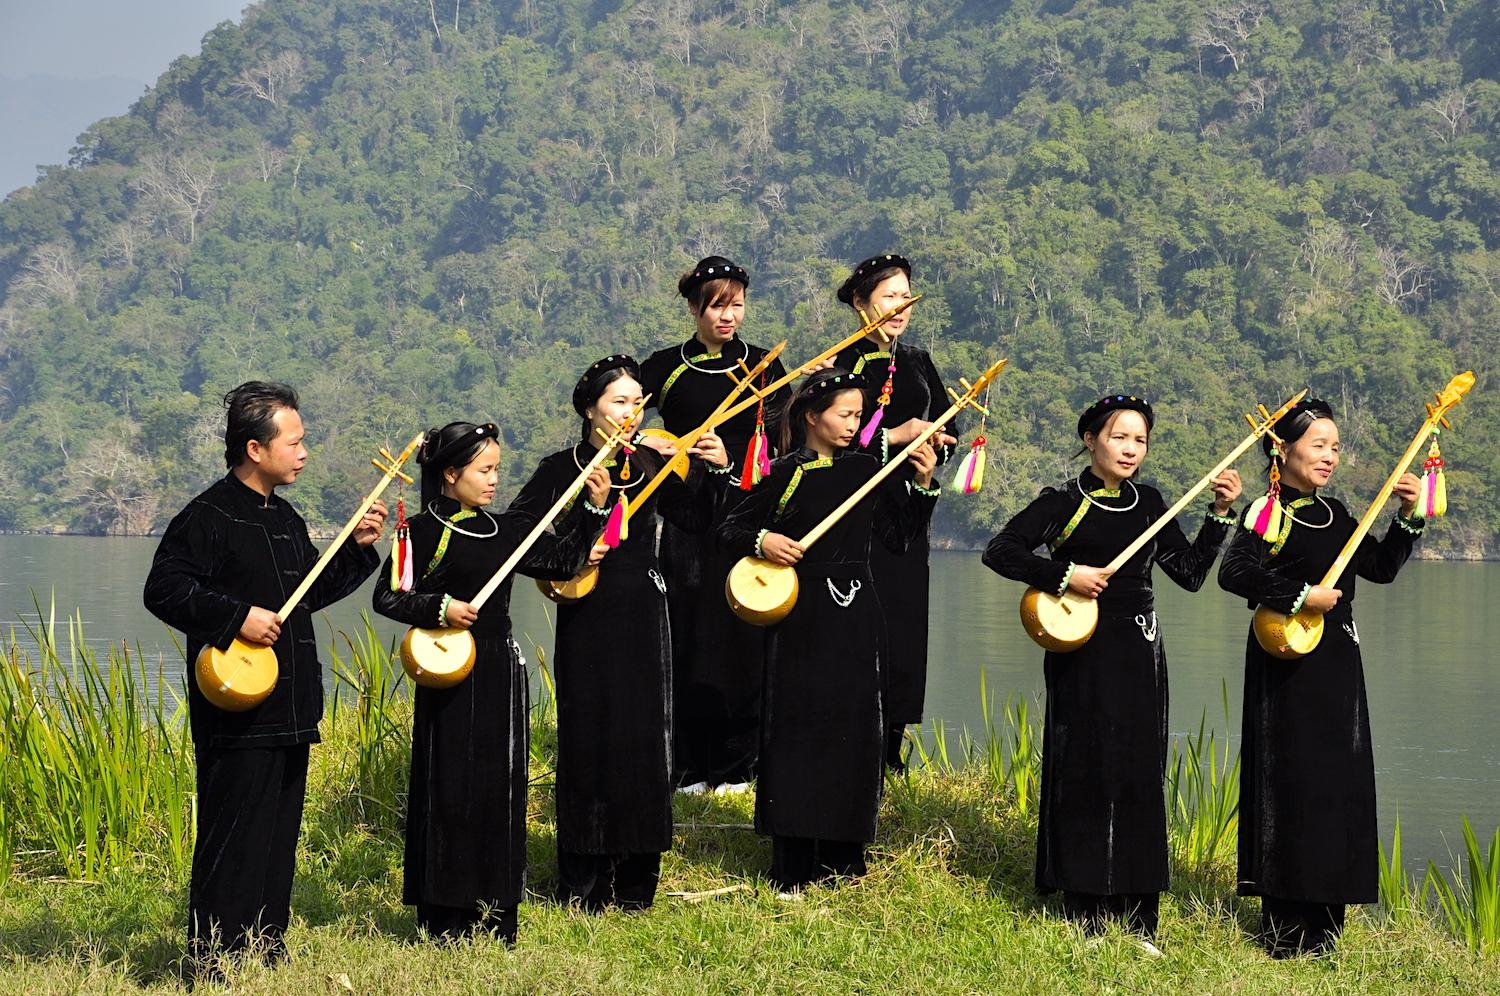 Tên và hình ảnh 54 dân tộc Việt Nam - Dân tộc Tày bên cây đàn tính